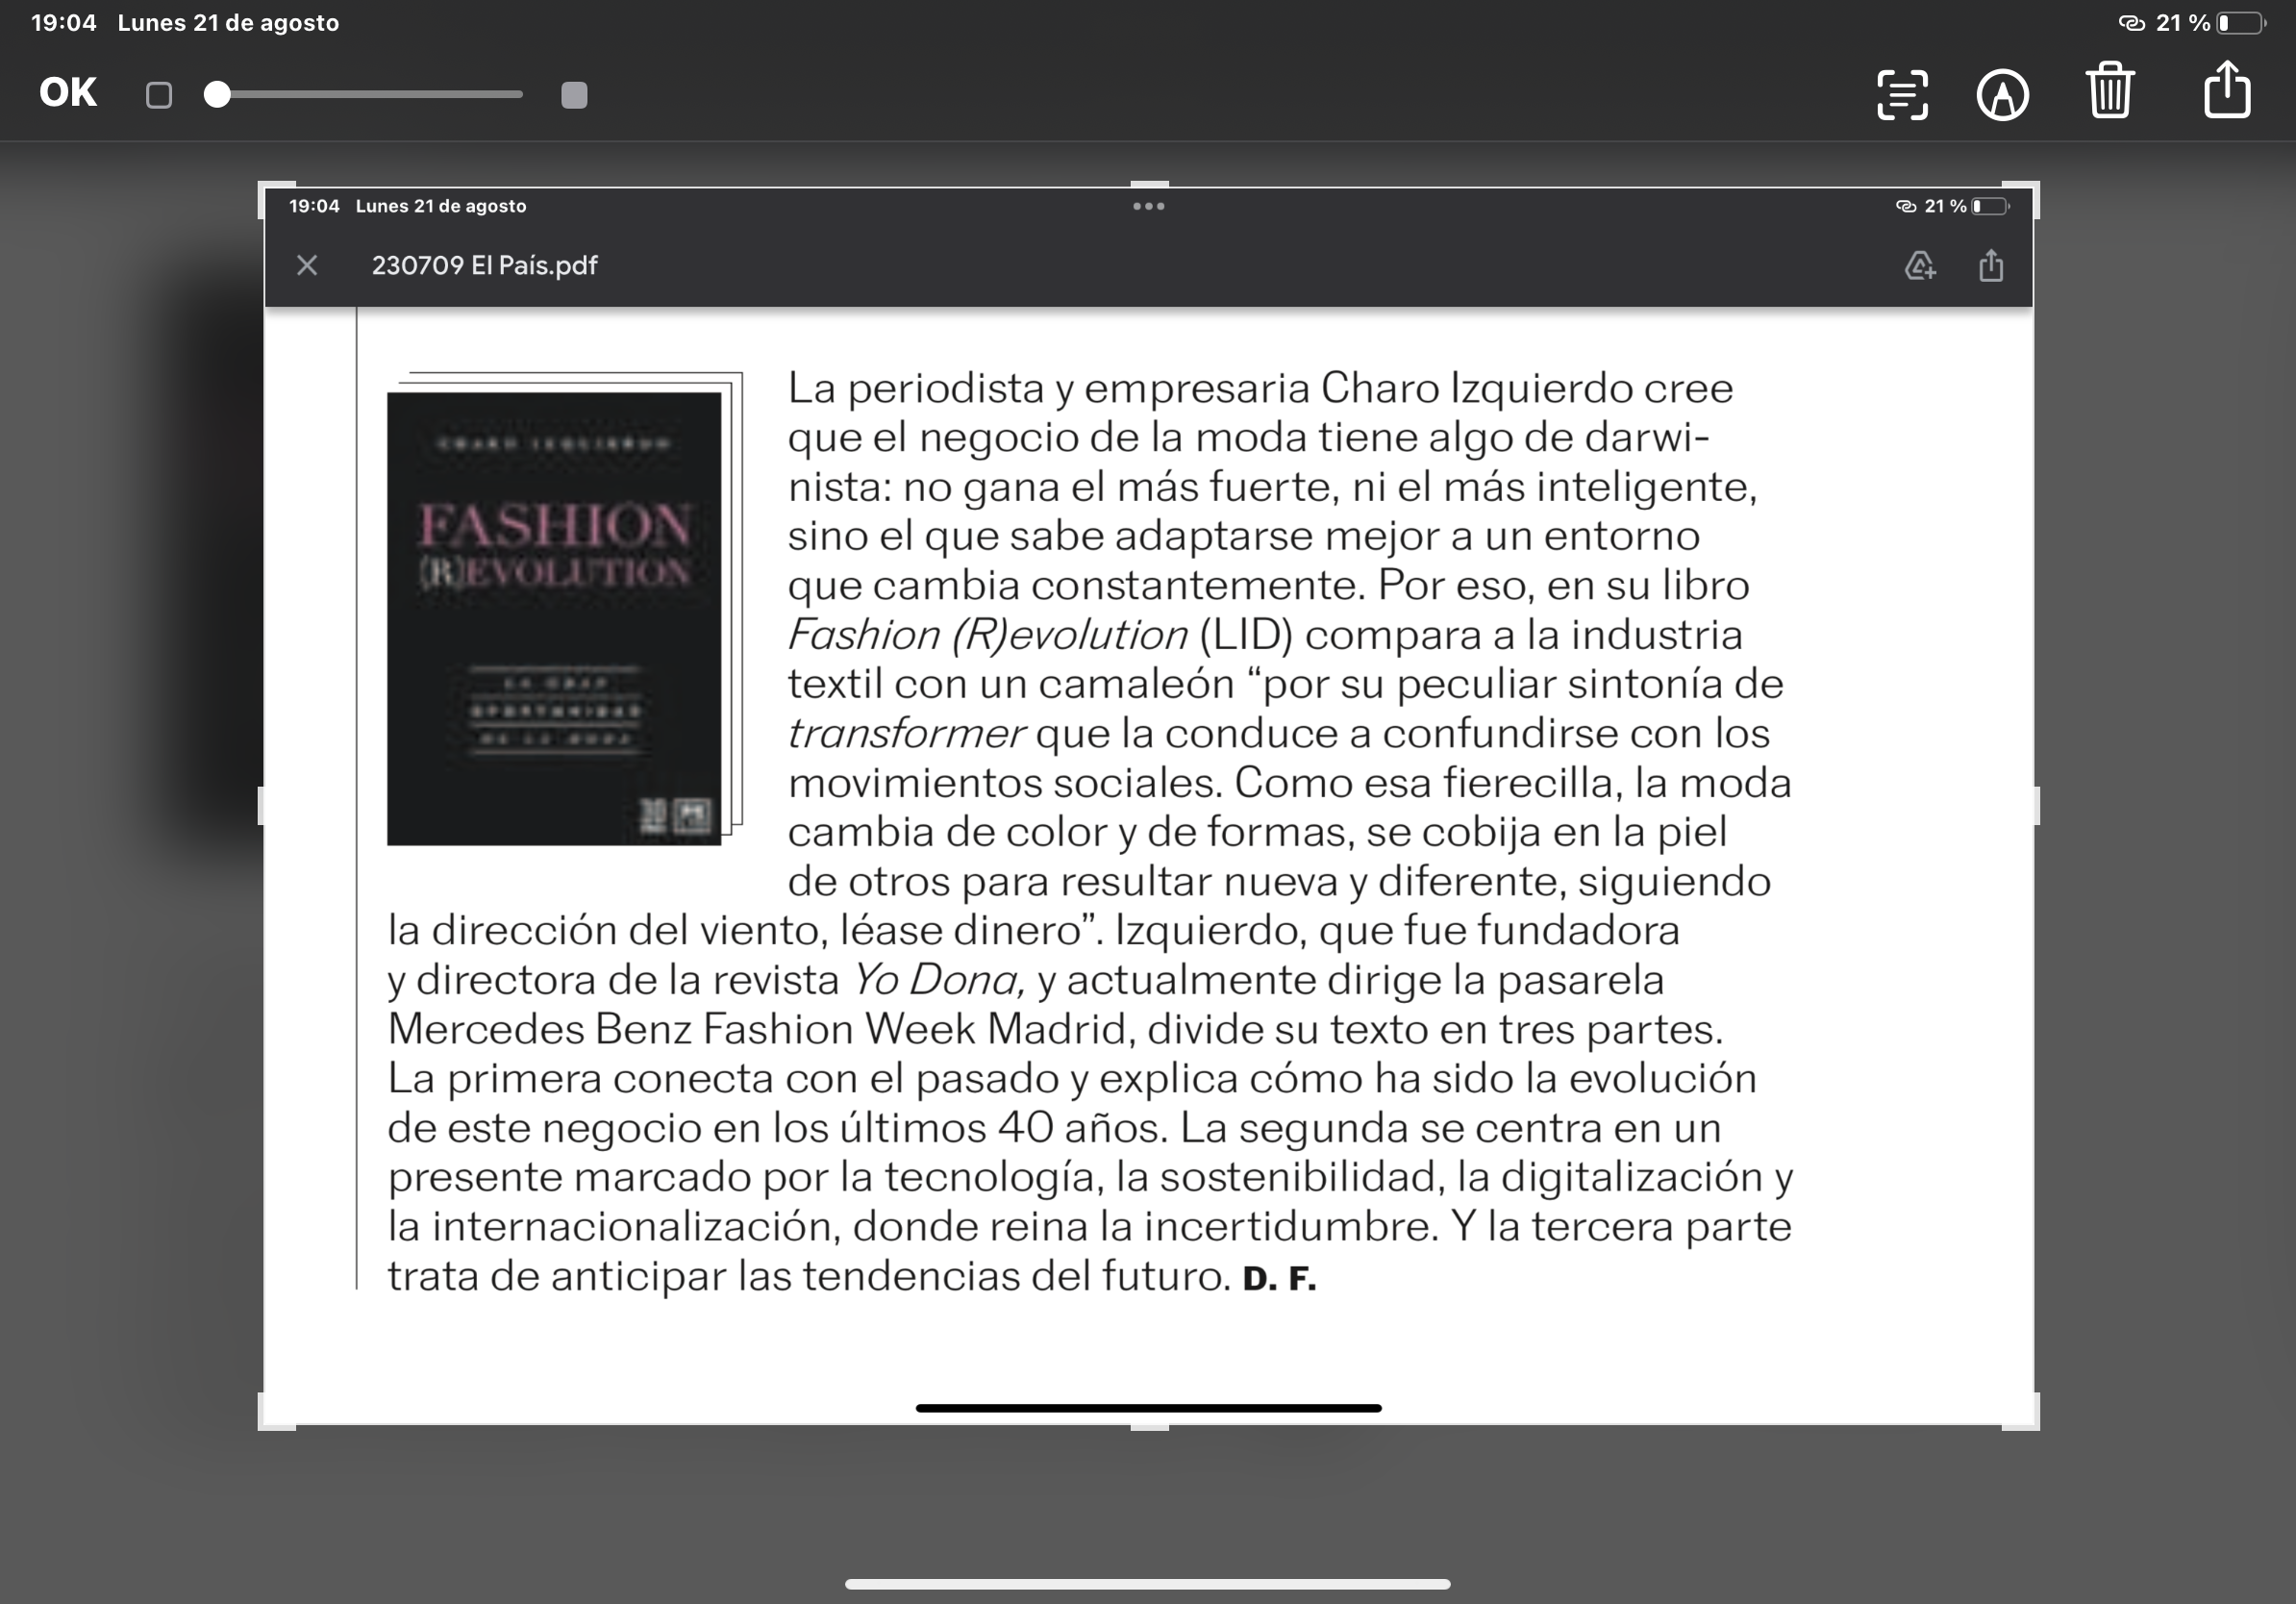 Fashion (R)evolution | El País